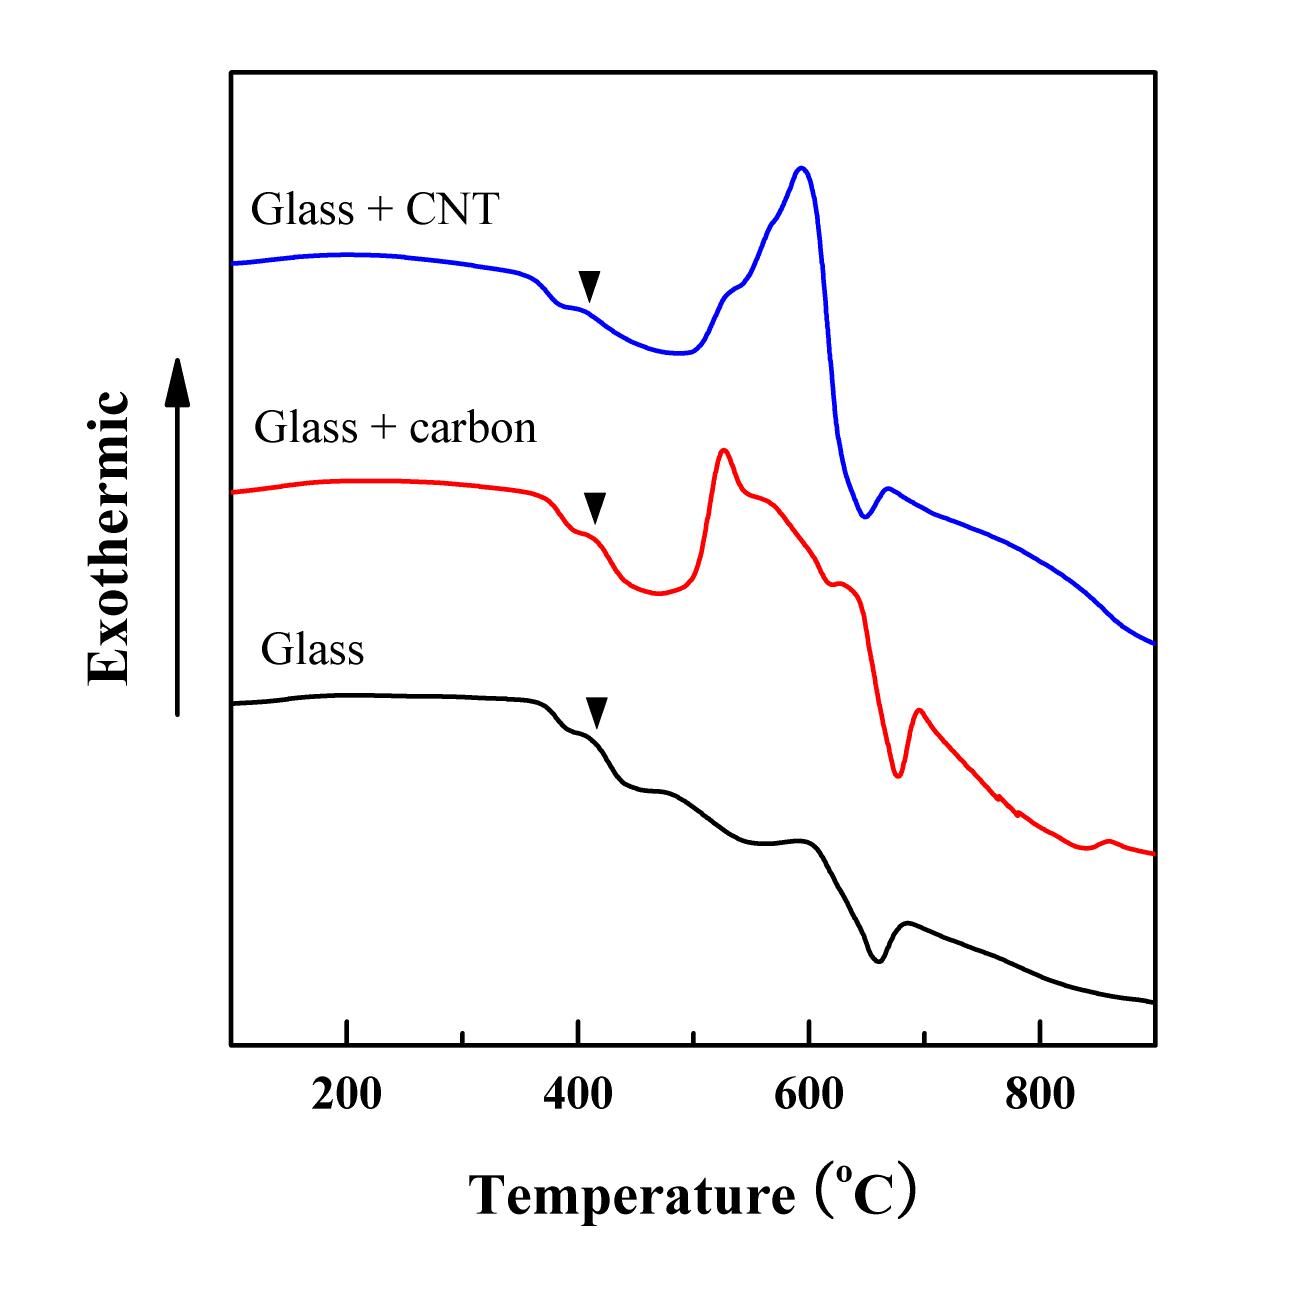 Glass powder 와 1 wt% 의 carbon powder, CNT 가 첨가된 경우의 DTA 분석 결과